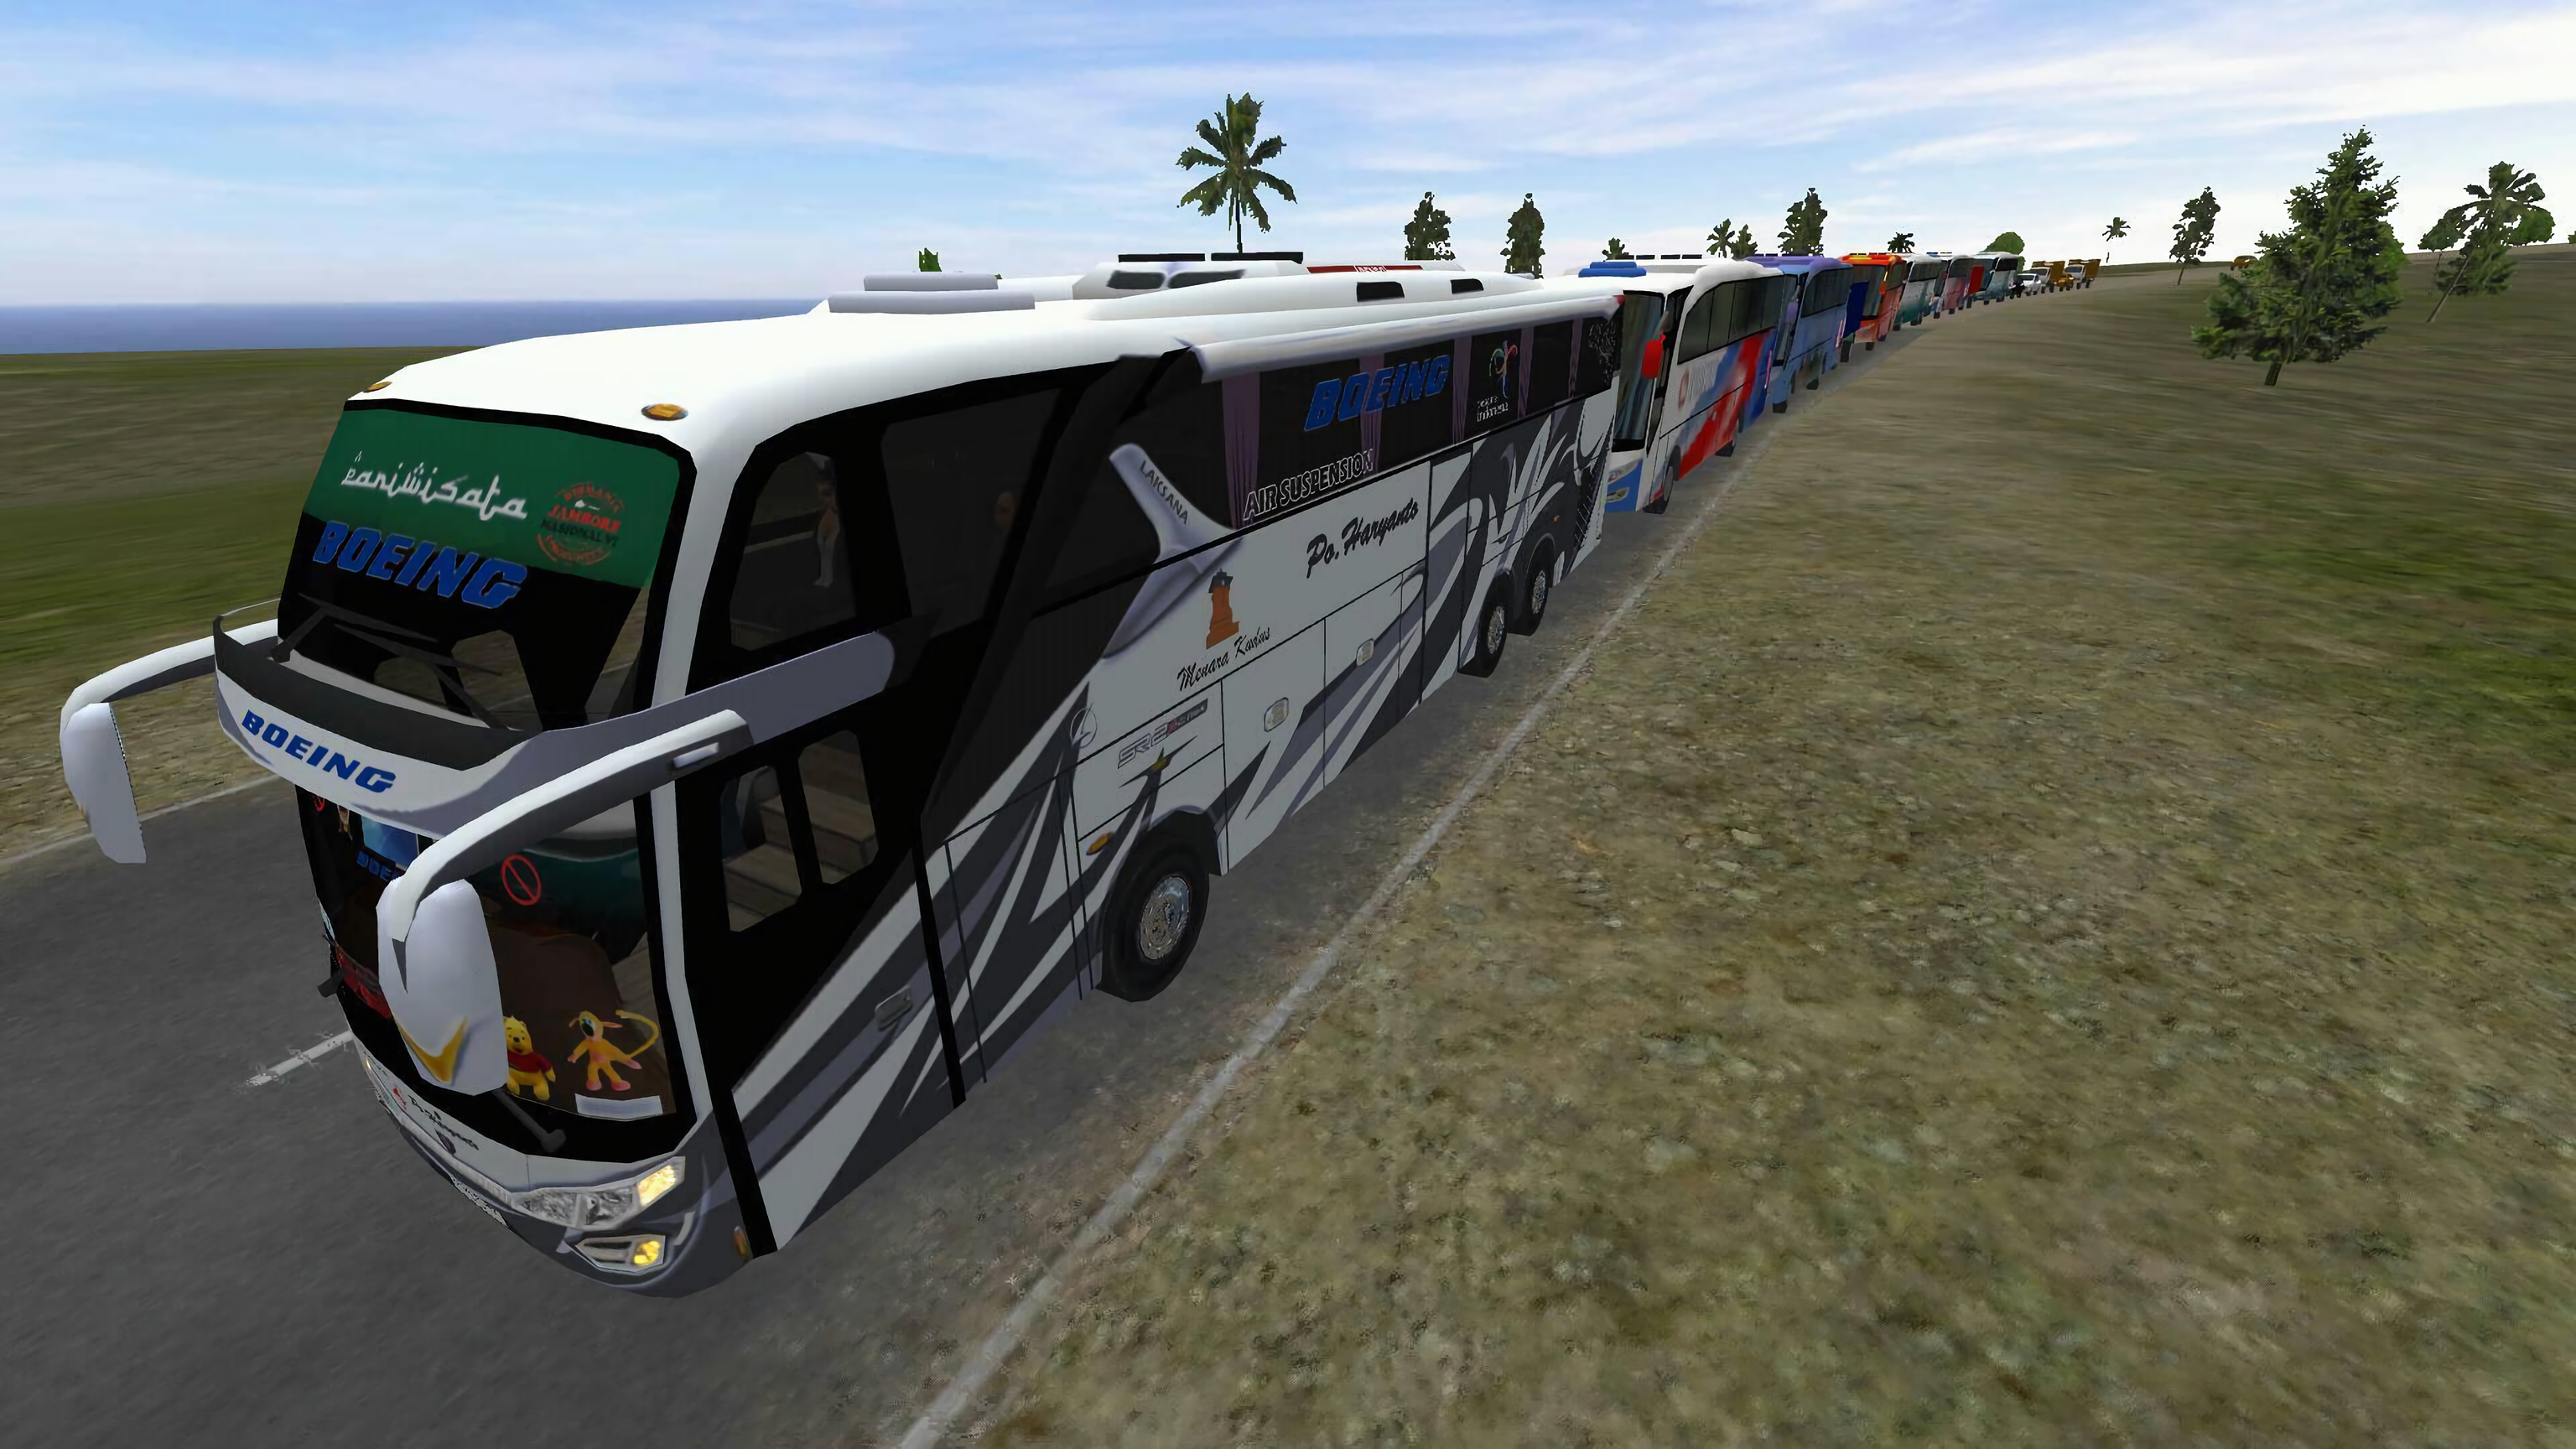 Screenshot 1 of 制服巴士模擬器印度尼西亞 2.3